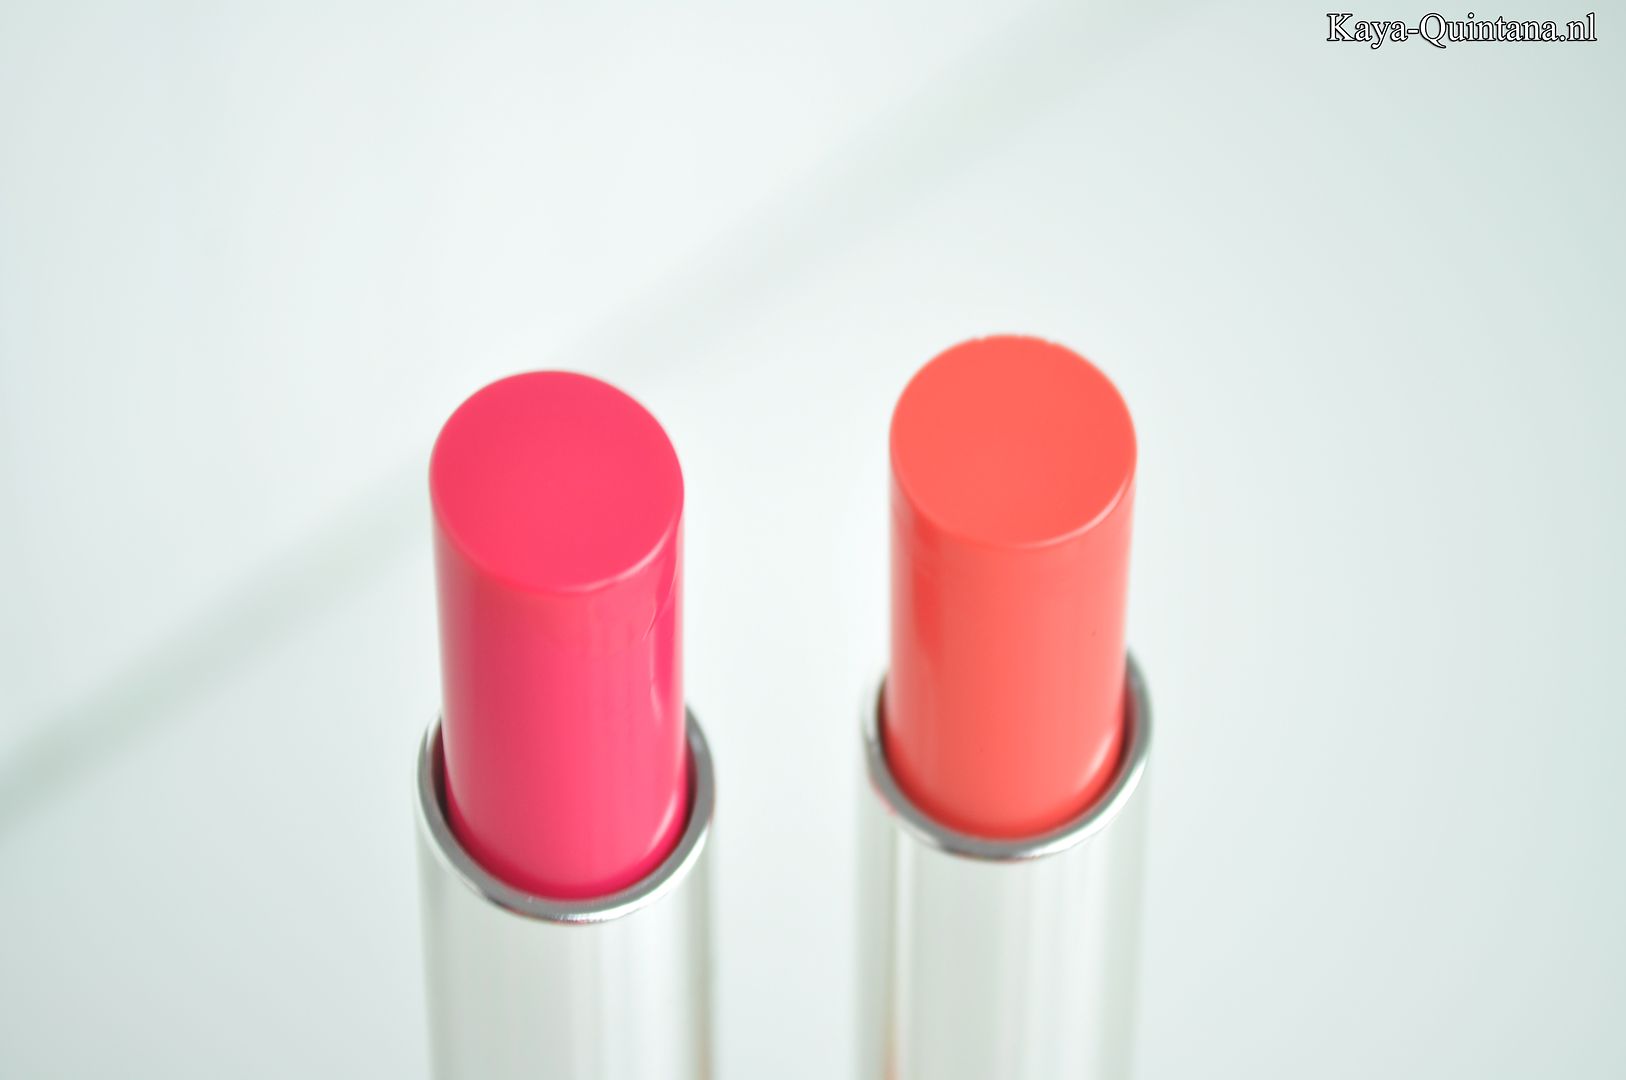 bourjois shine edition lipstick swatches